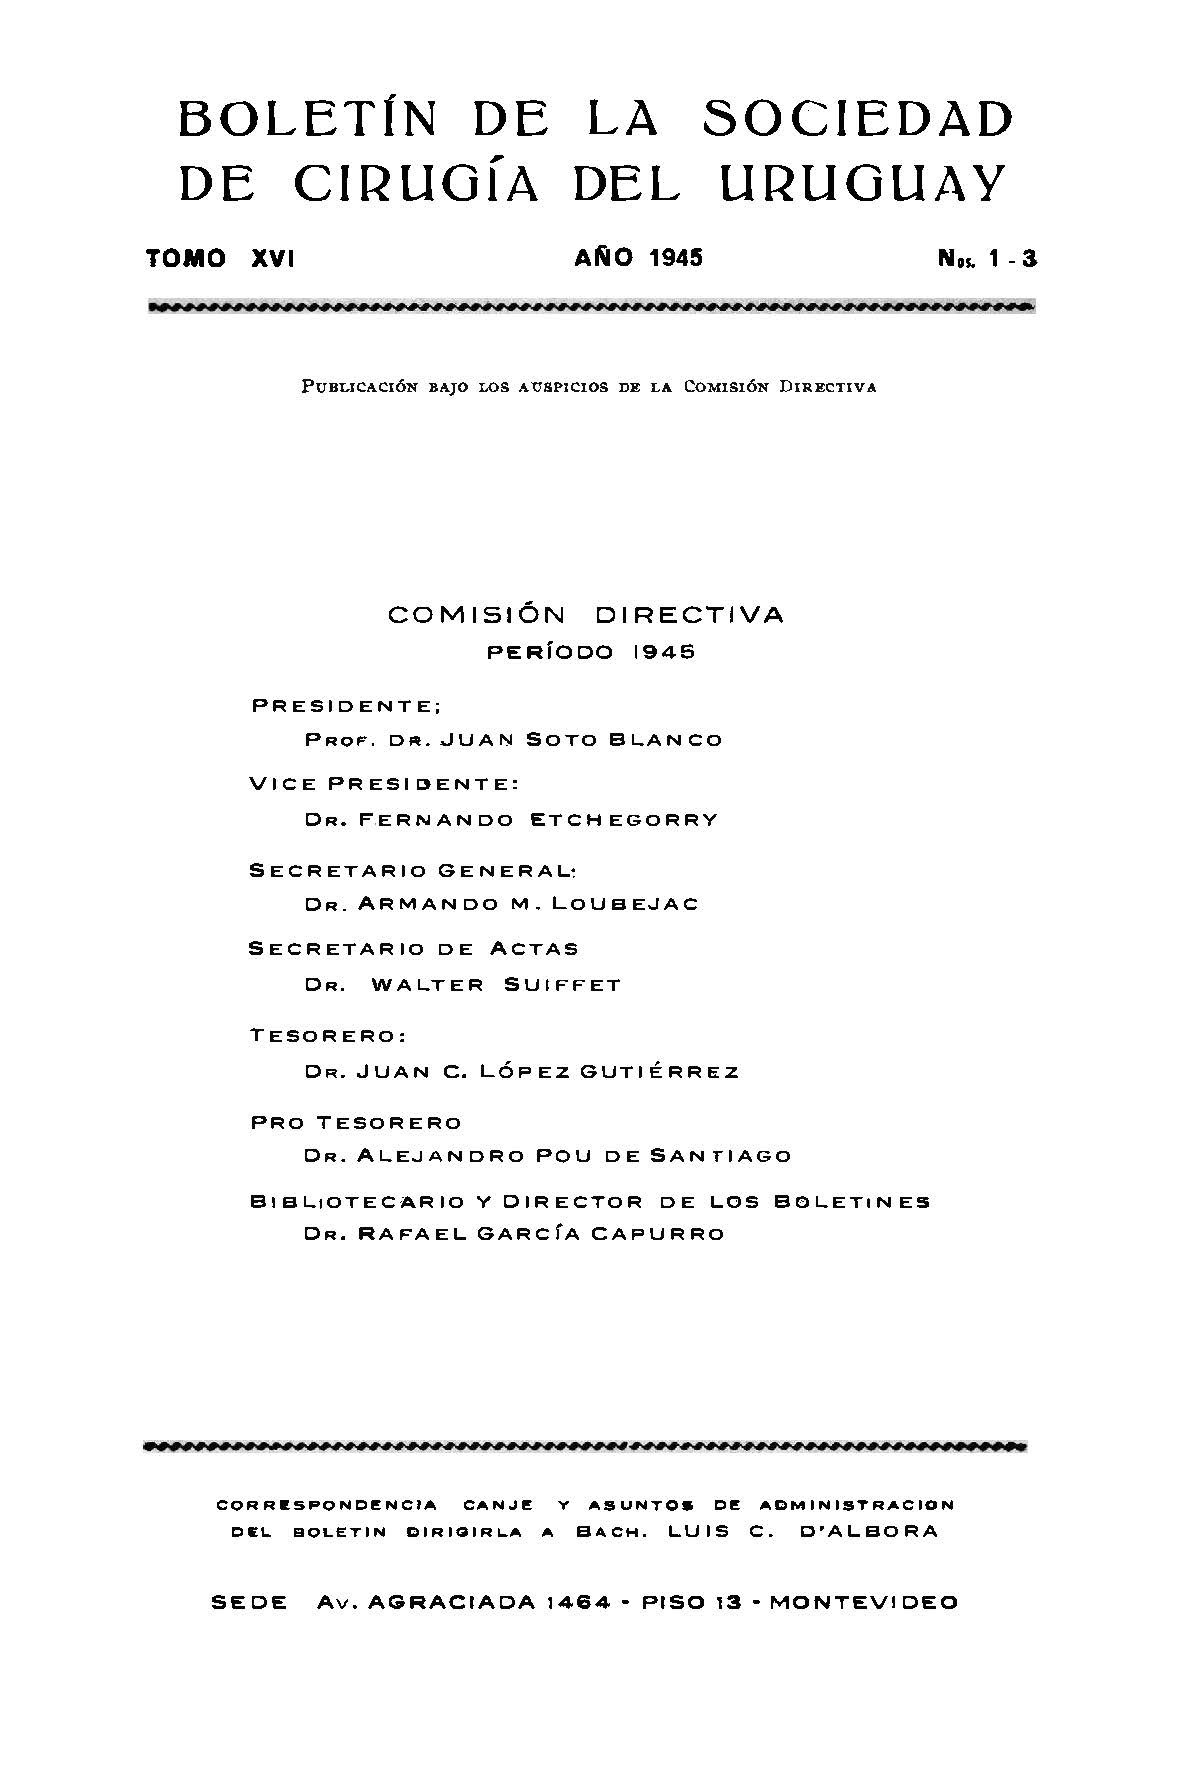 					Ver Vol. 16 Núm. 1-3 (1945): Boletín de la Sociedad de Cirugía del Uruguay
				